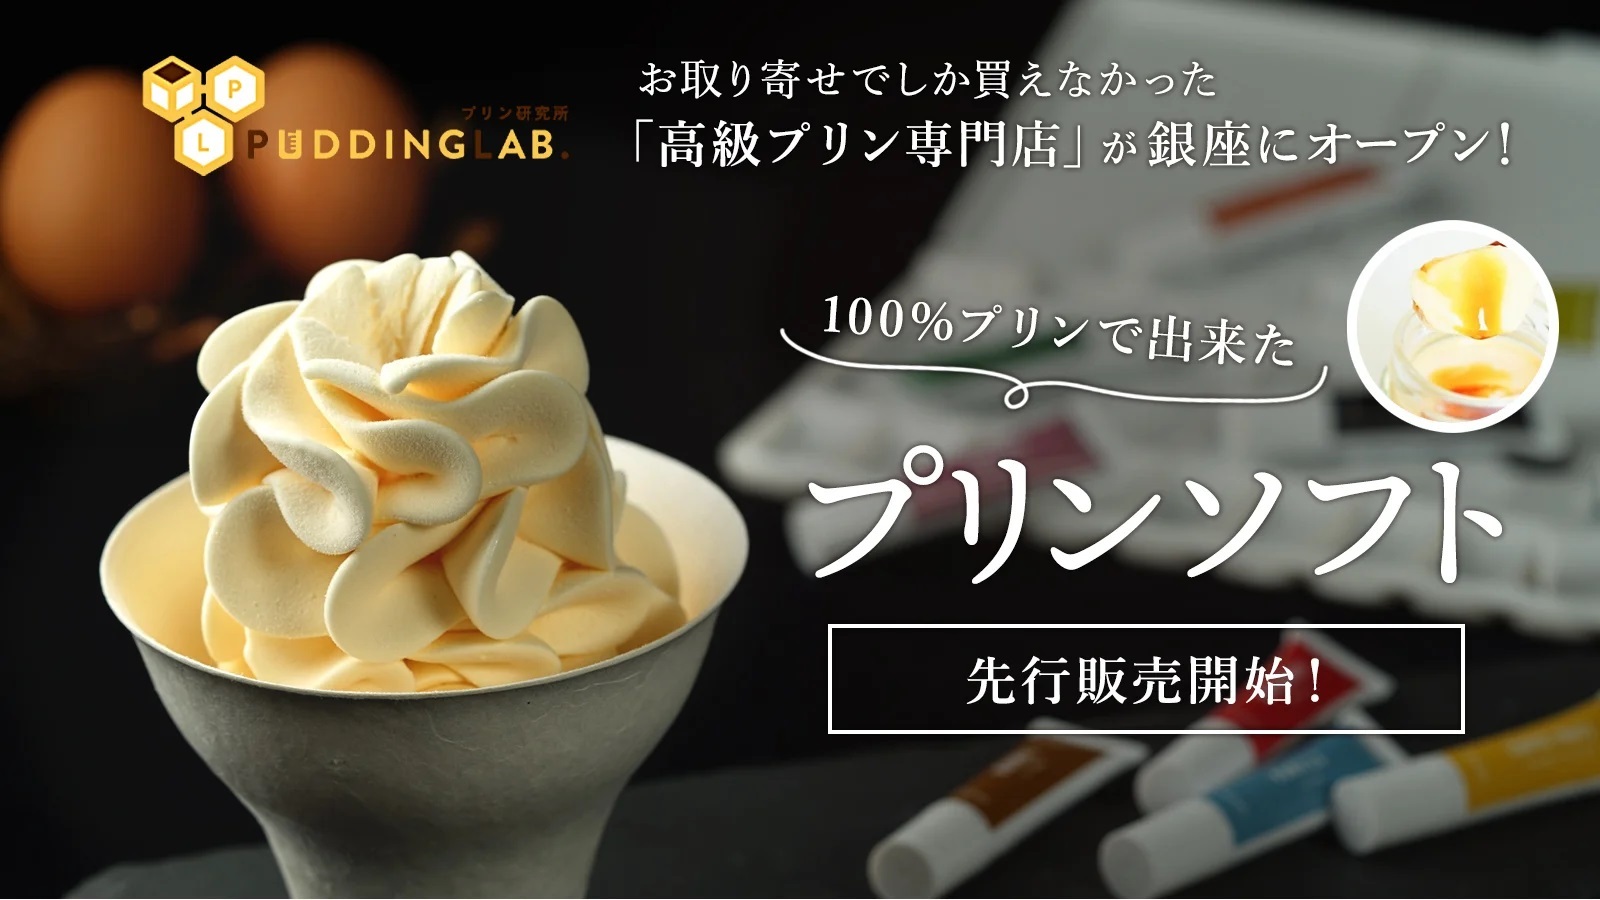 9月4日串カツ記念日は、日本中の家庭で美味しい串カツを！
串カツの伝道師が教える簡単絶品串カツレシピを公開！